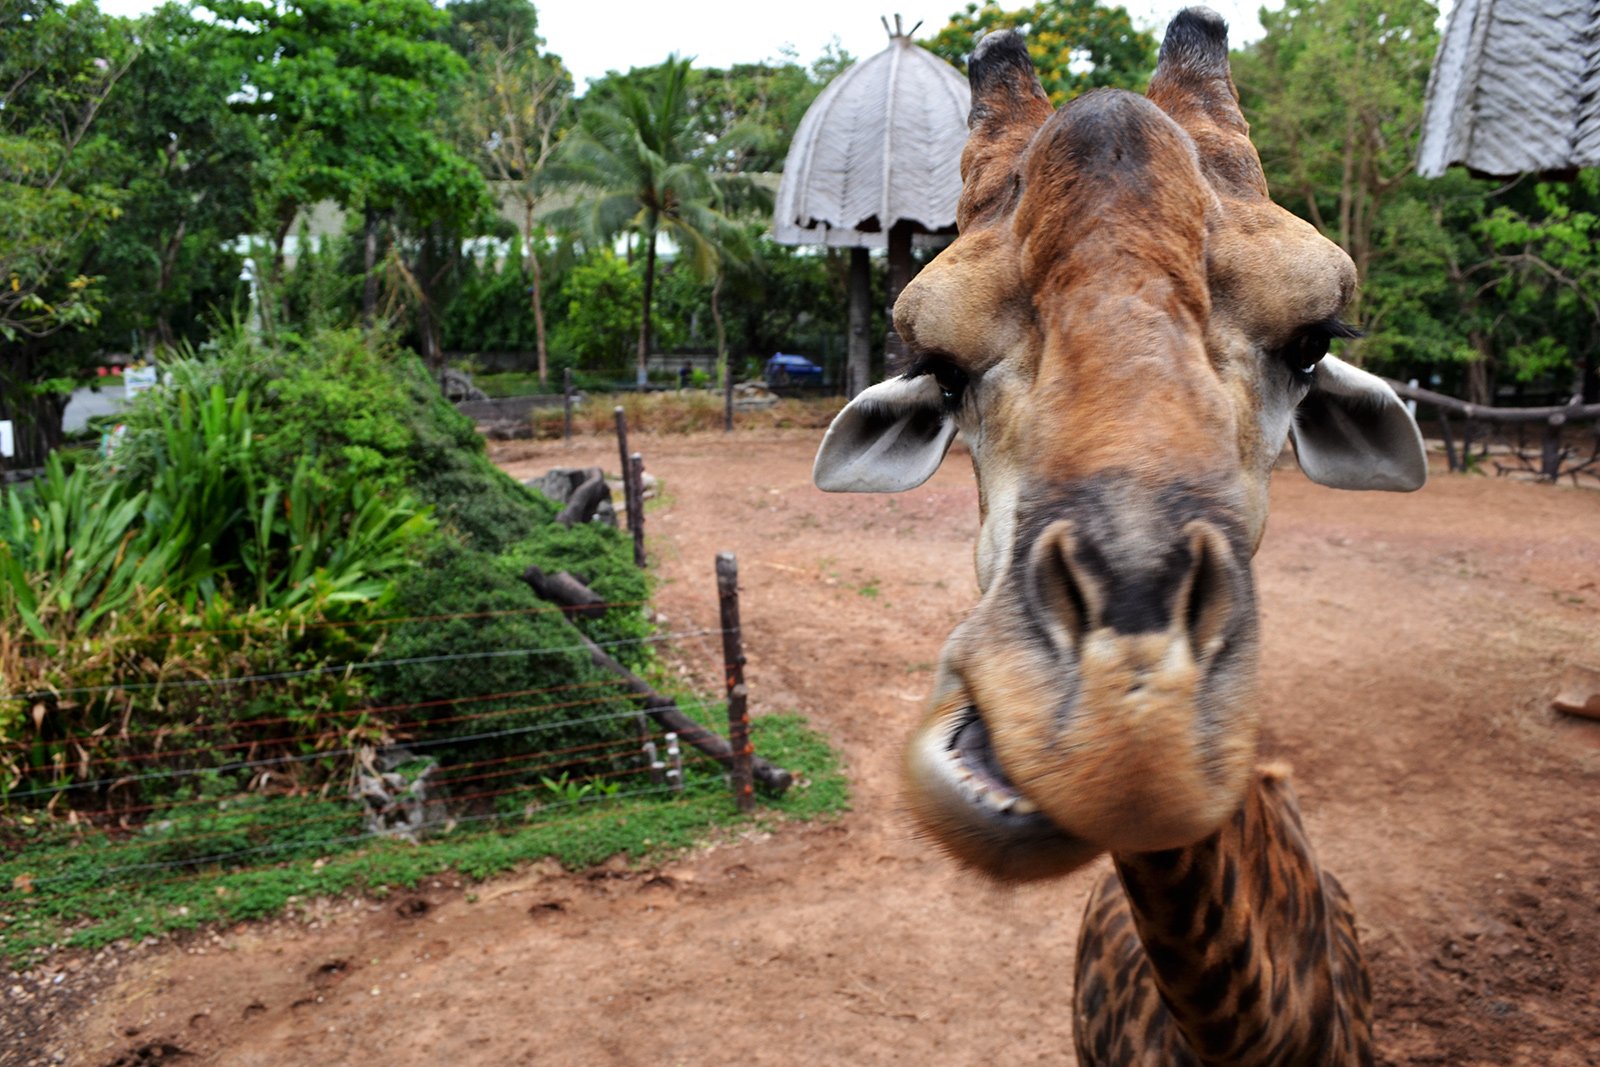 How to feed a giraffe in Bangkok